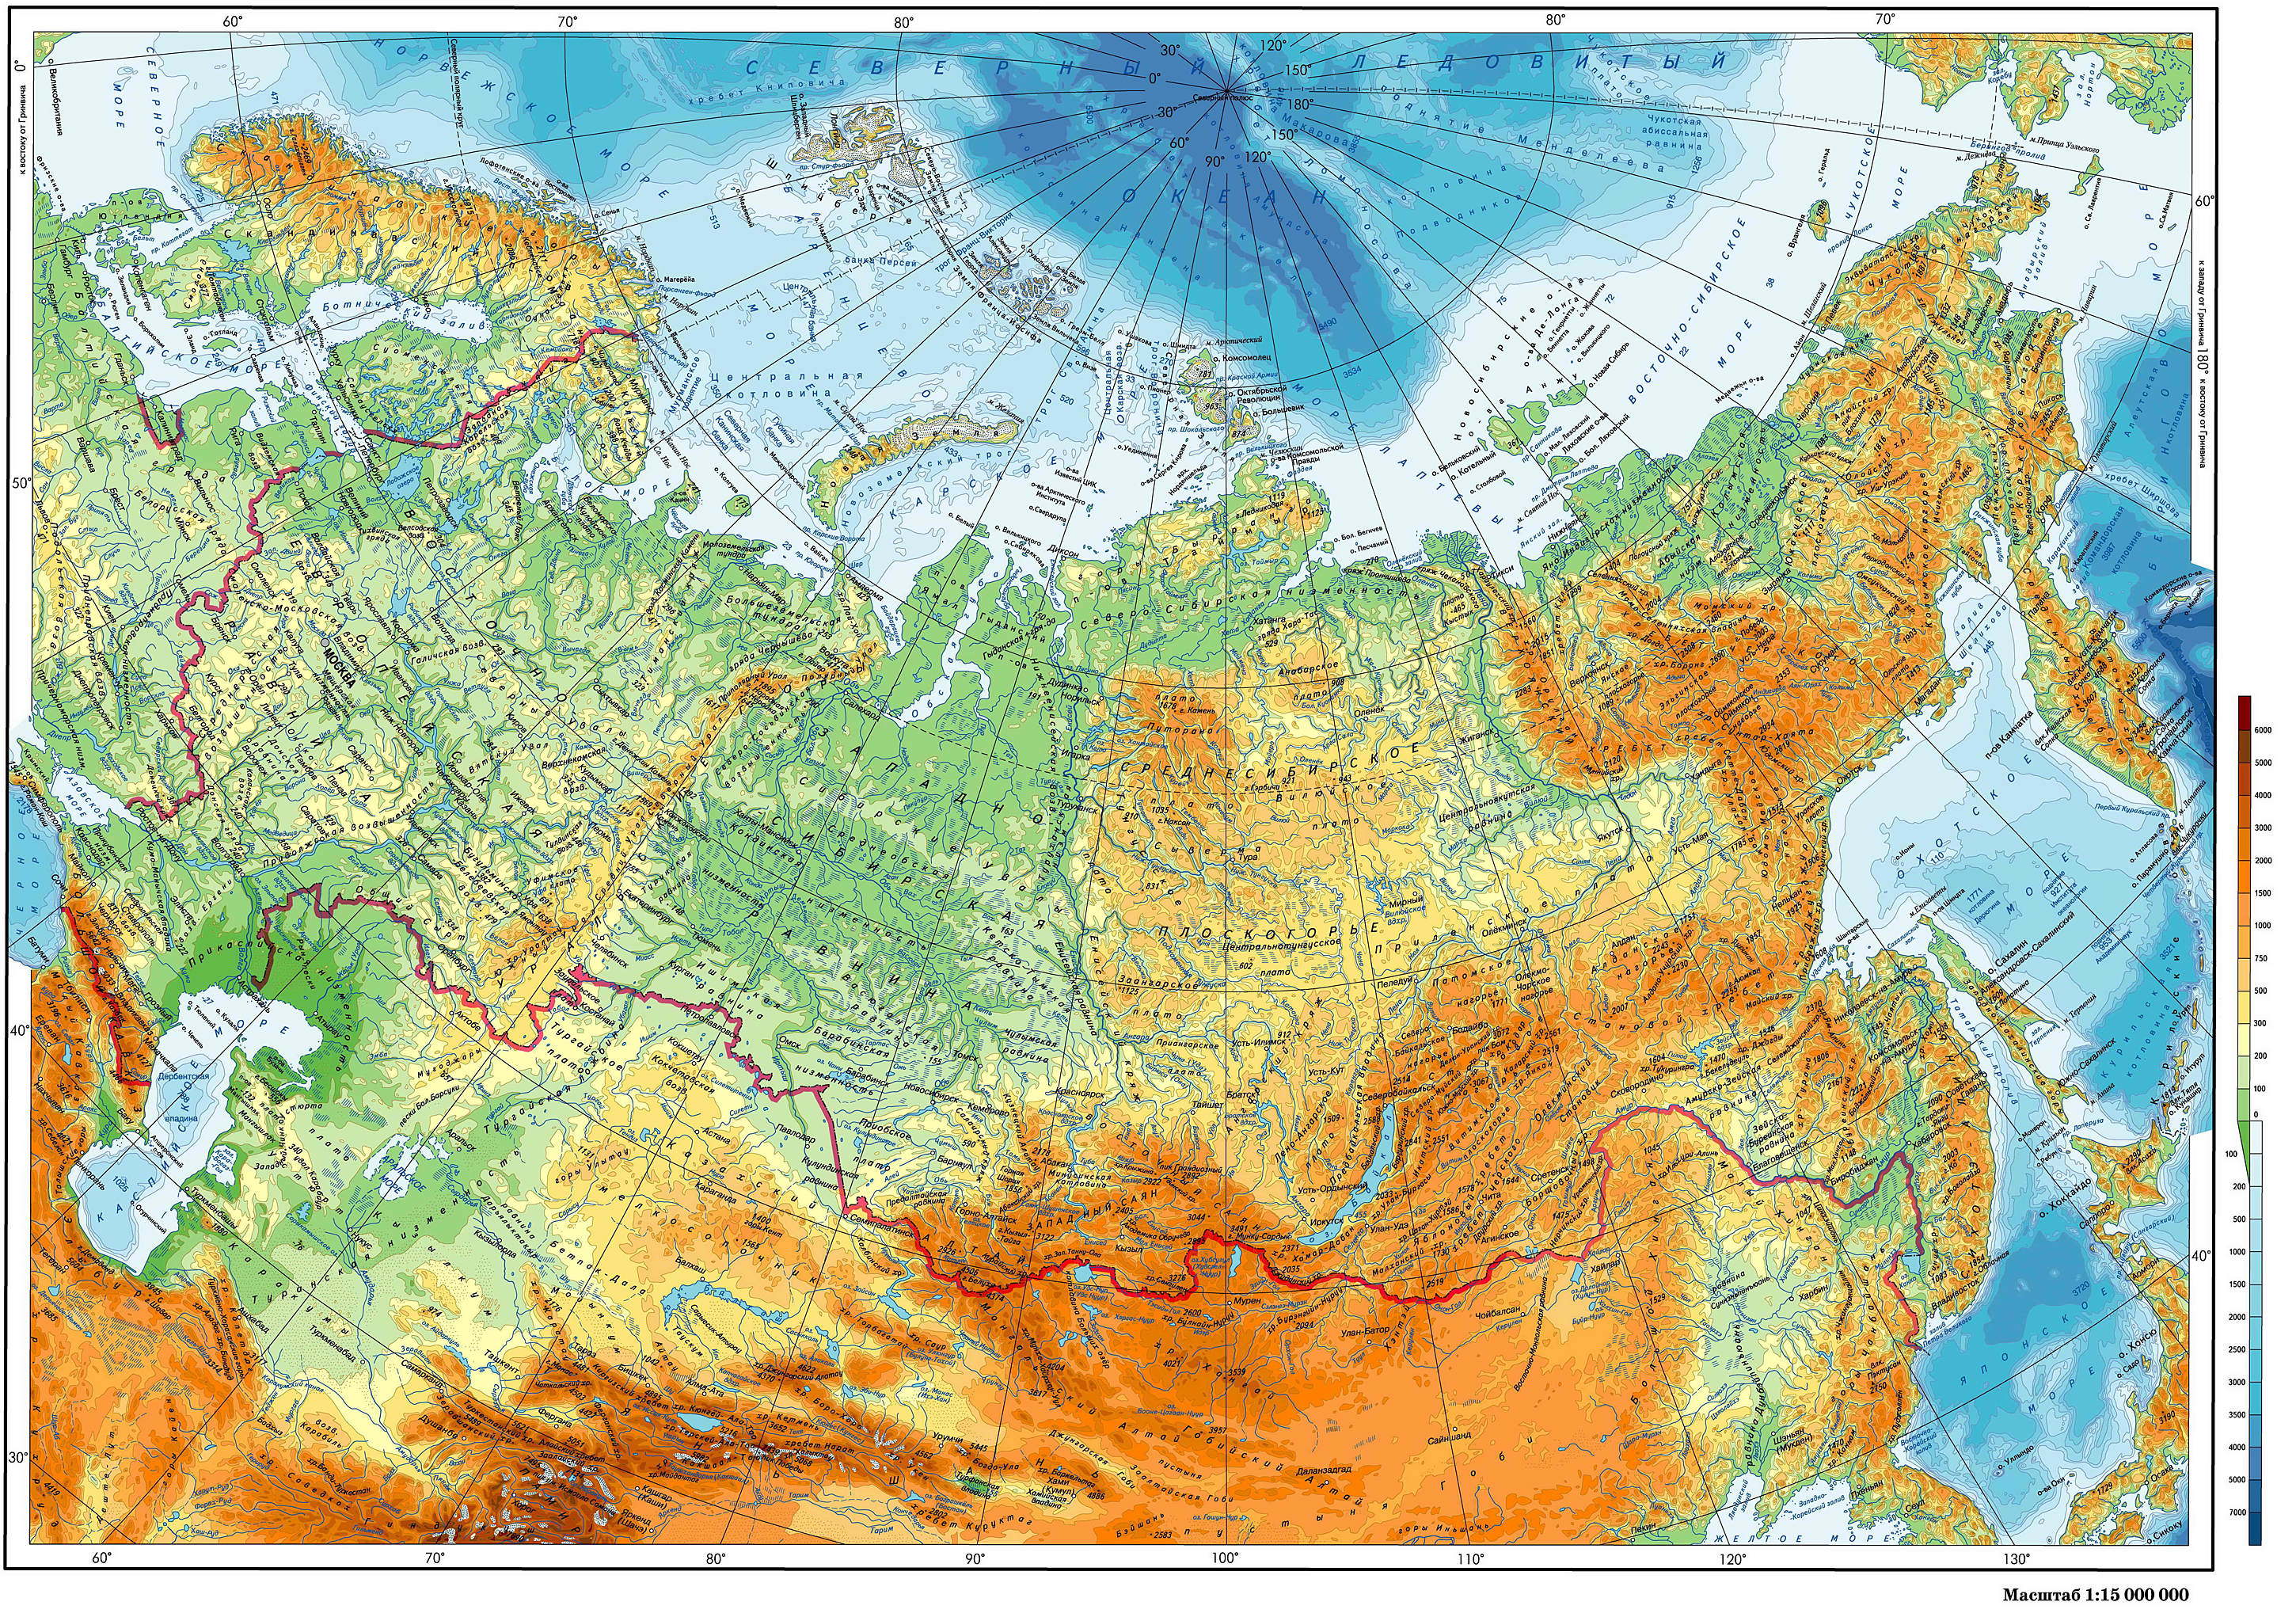 Карта электрификации россии